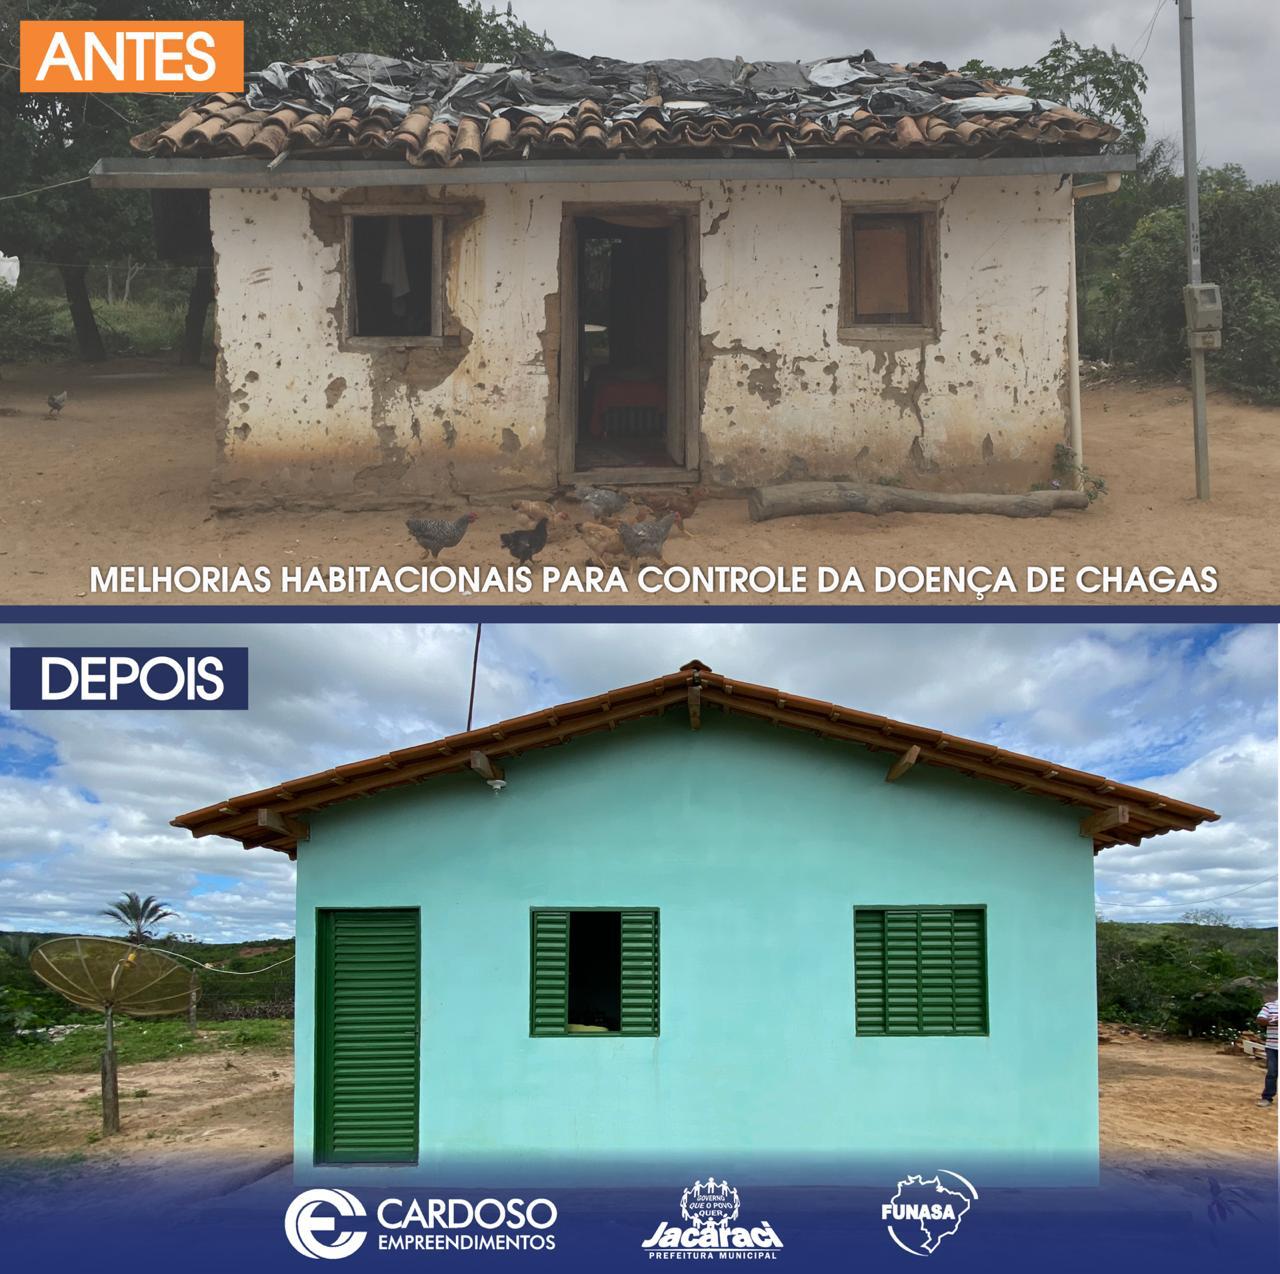 Implantação de melhorias habitacionais para controle de doença das Chagas no município de Jacaraci - SICONV 847984/2017